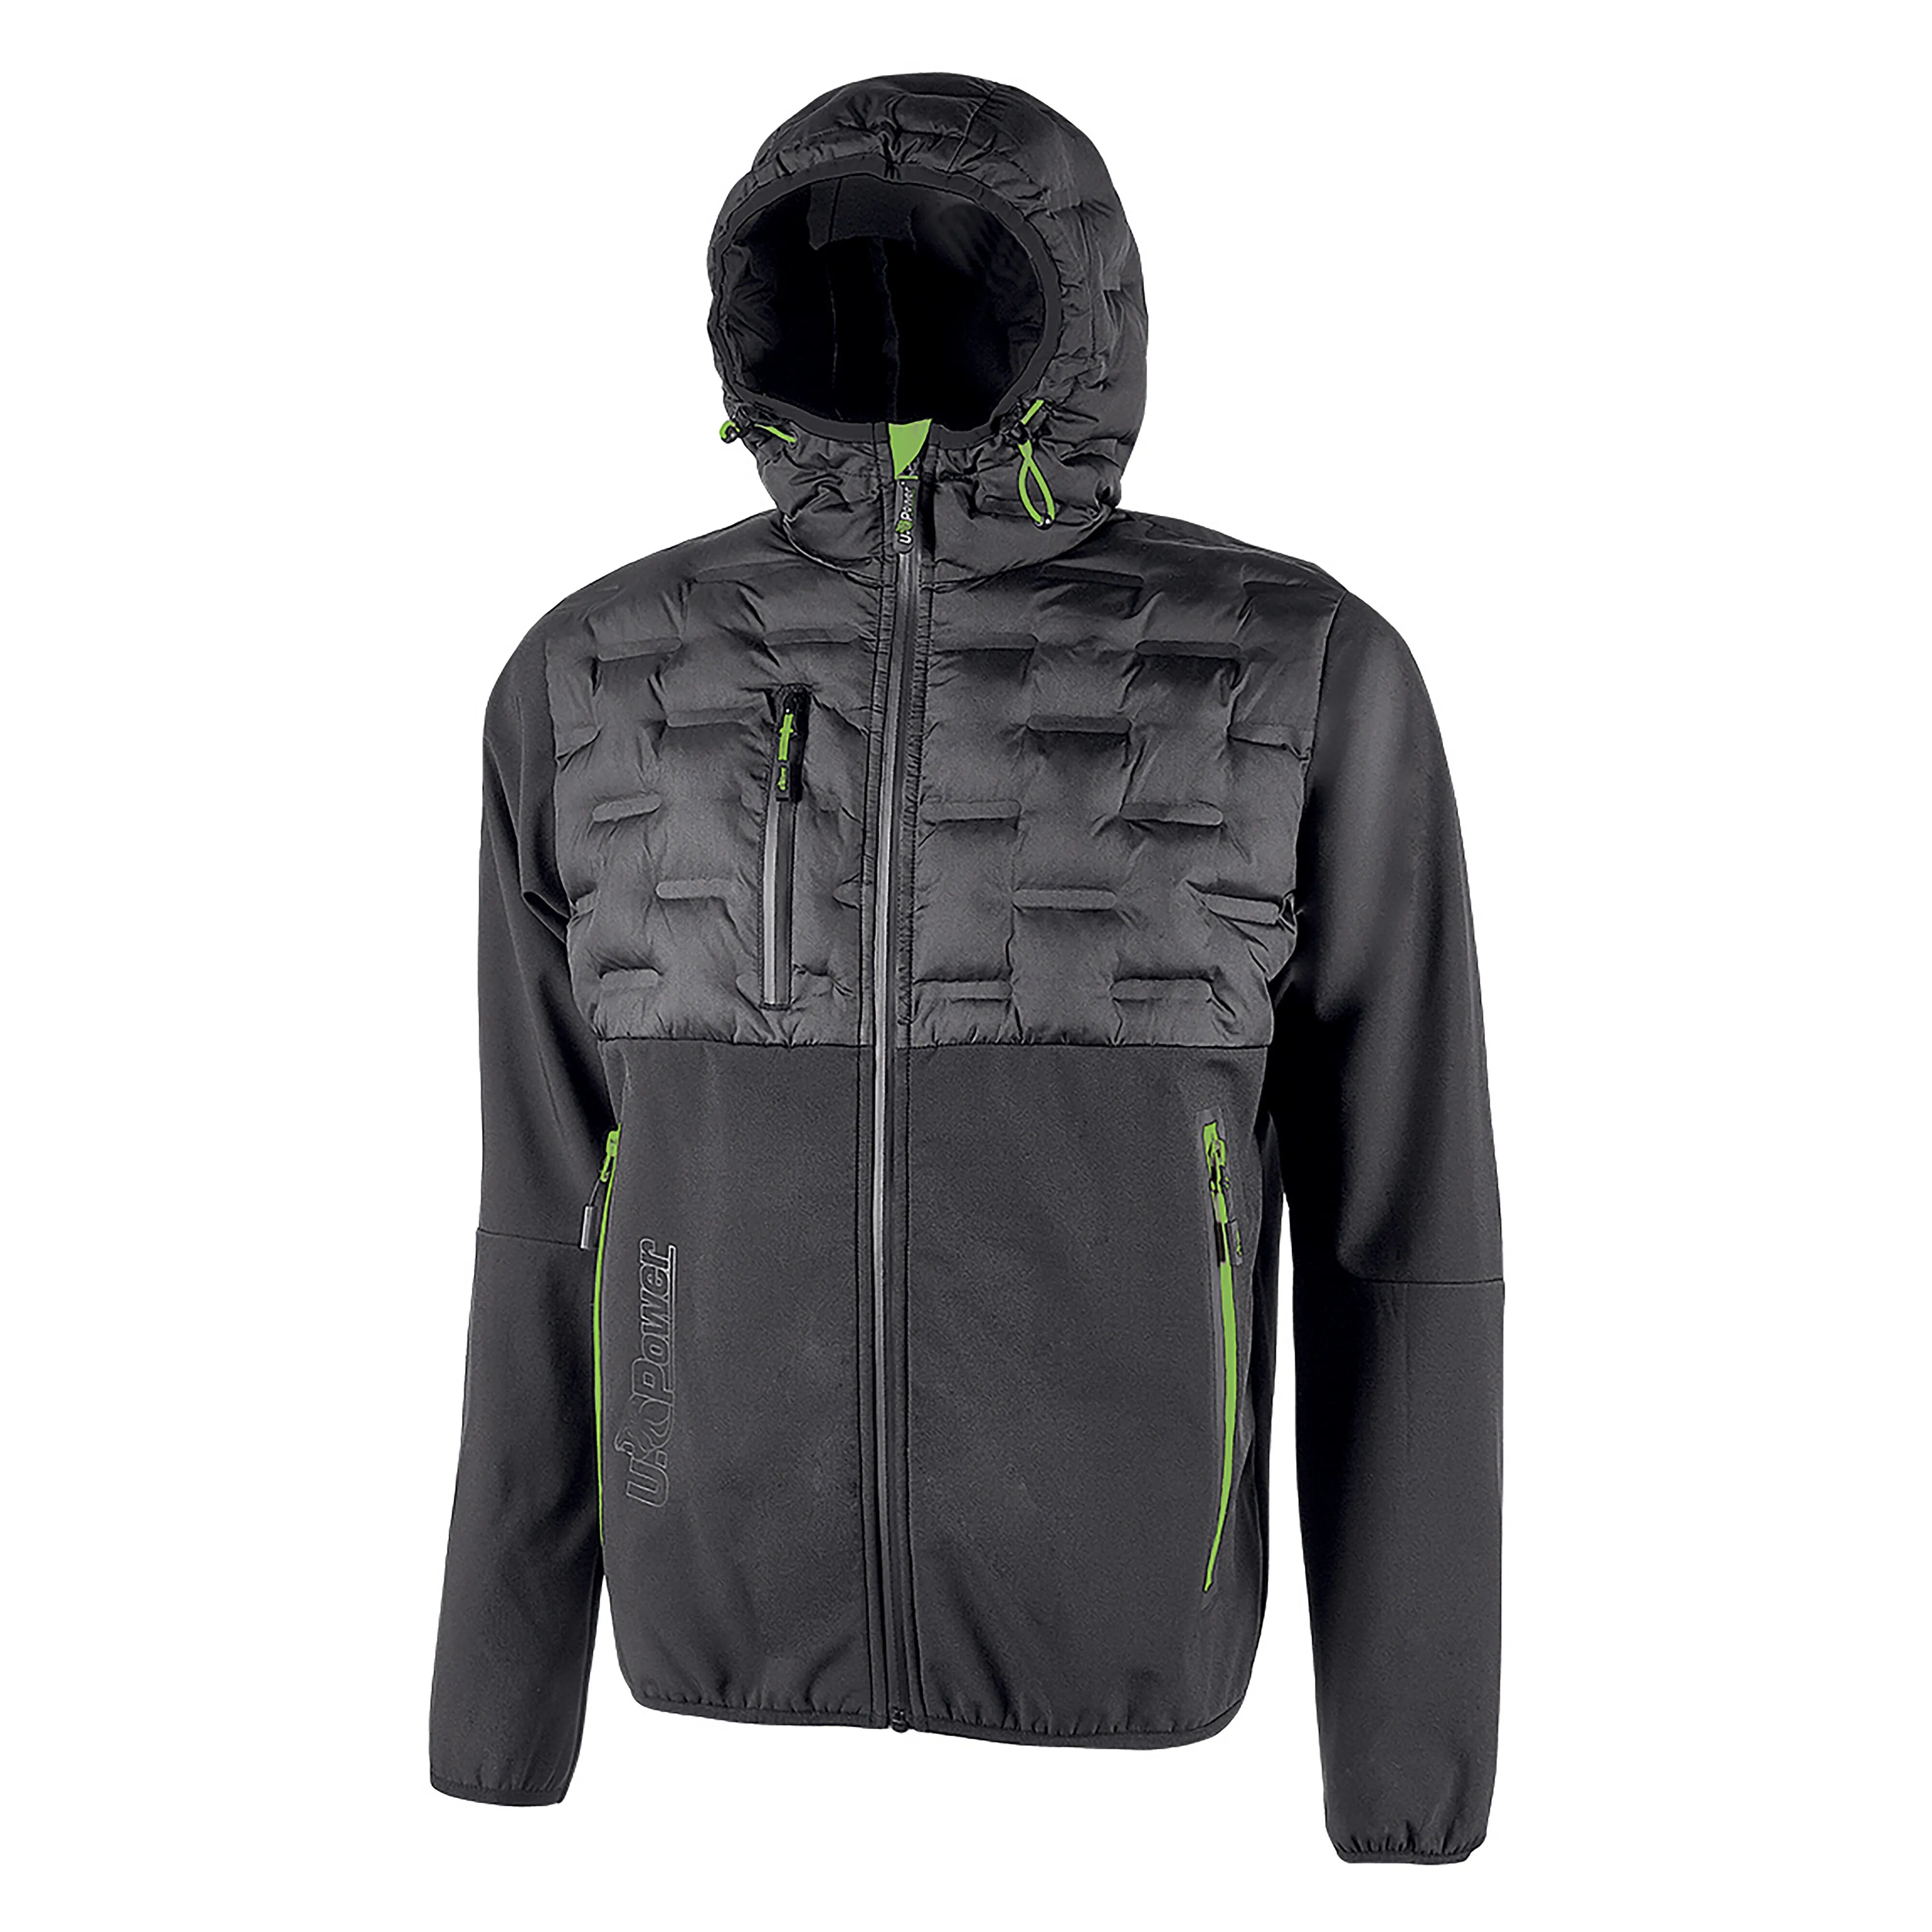 u-power giacca soft shell spock  taglia l colore grigio inserti verdi idrorepellente